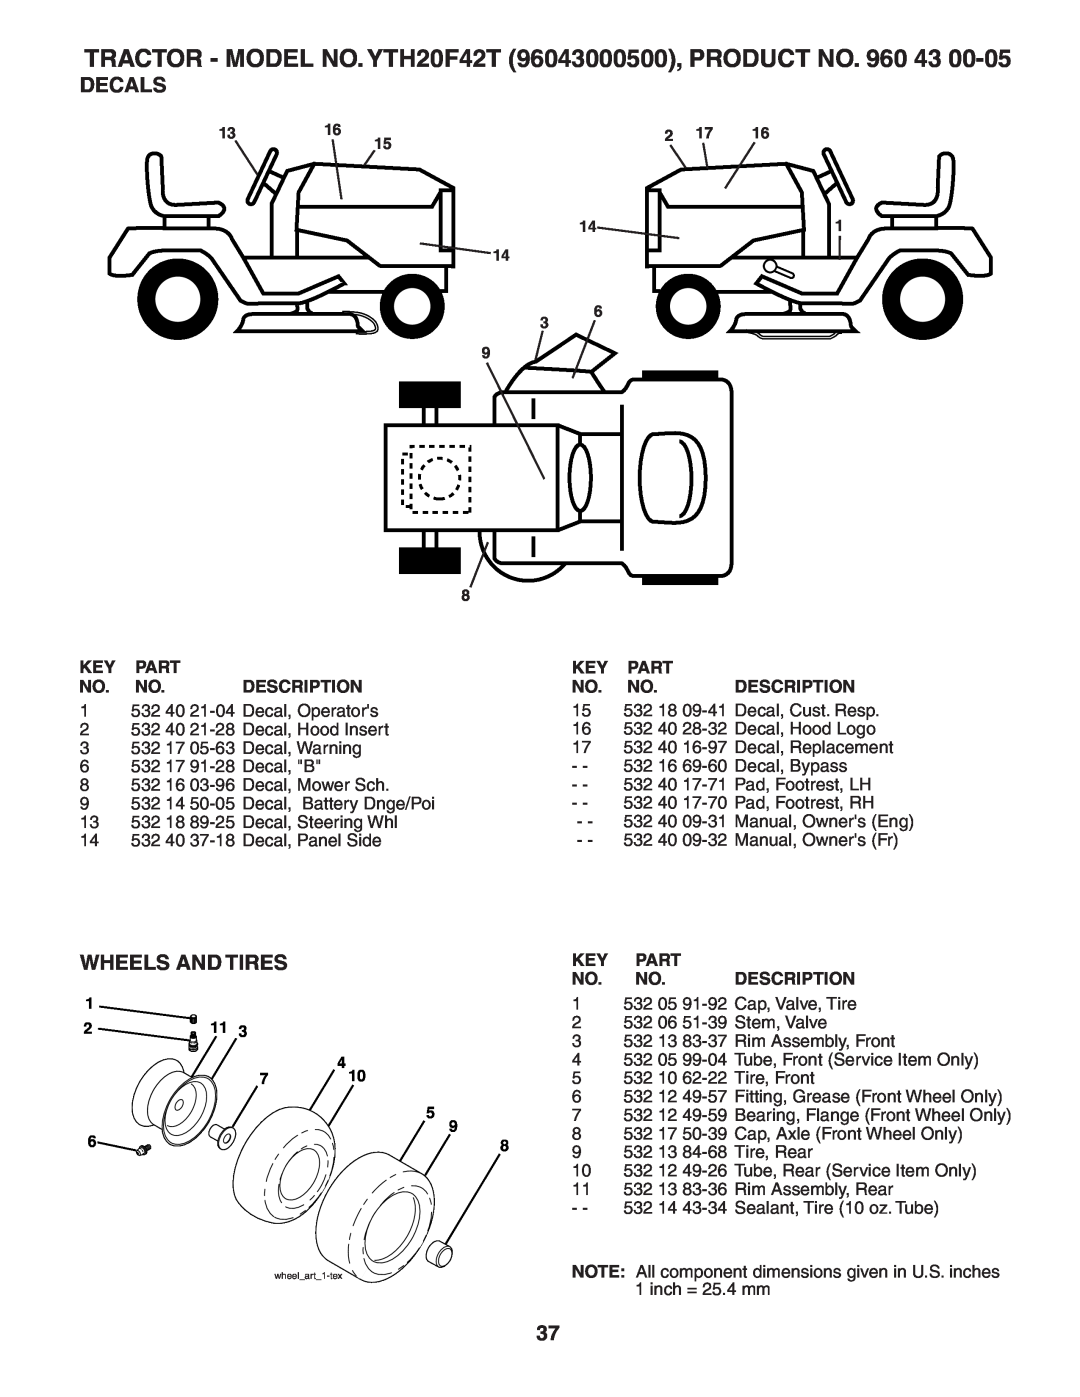 Husqvarna Decals, Wheels And Tires, TRACTOR - MODEL NO. YTH20F42T 96043000500, PRODUCT NO. 960 43, Part, Description 